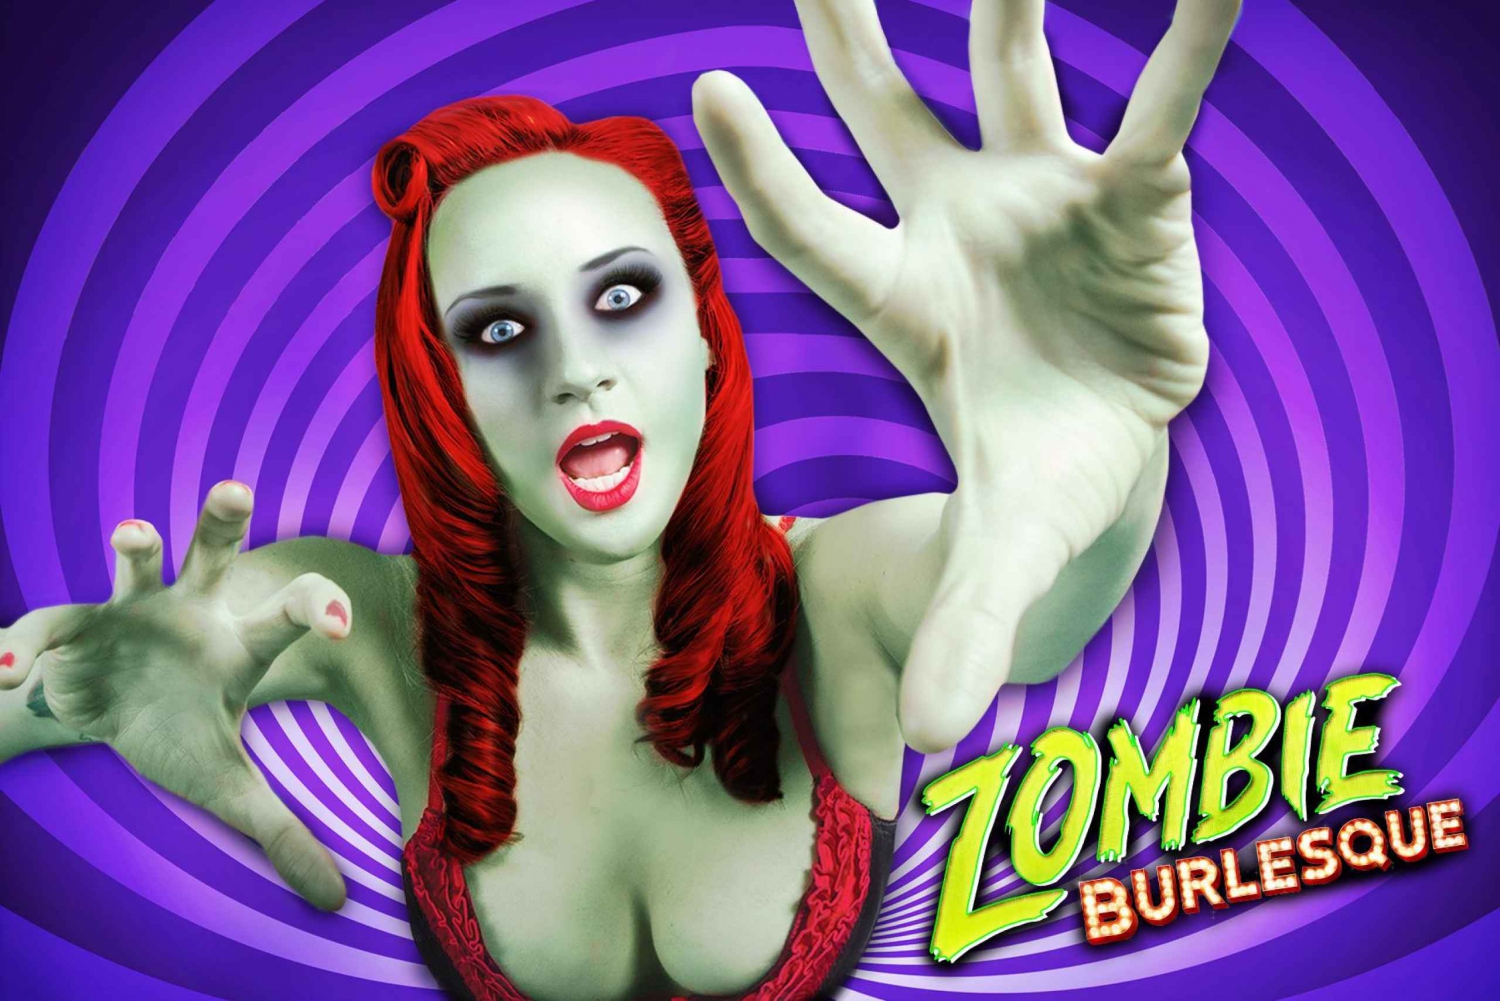 Las Vegas Zombie Burlesque Comedia Espectáculo Musical Entrada